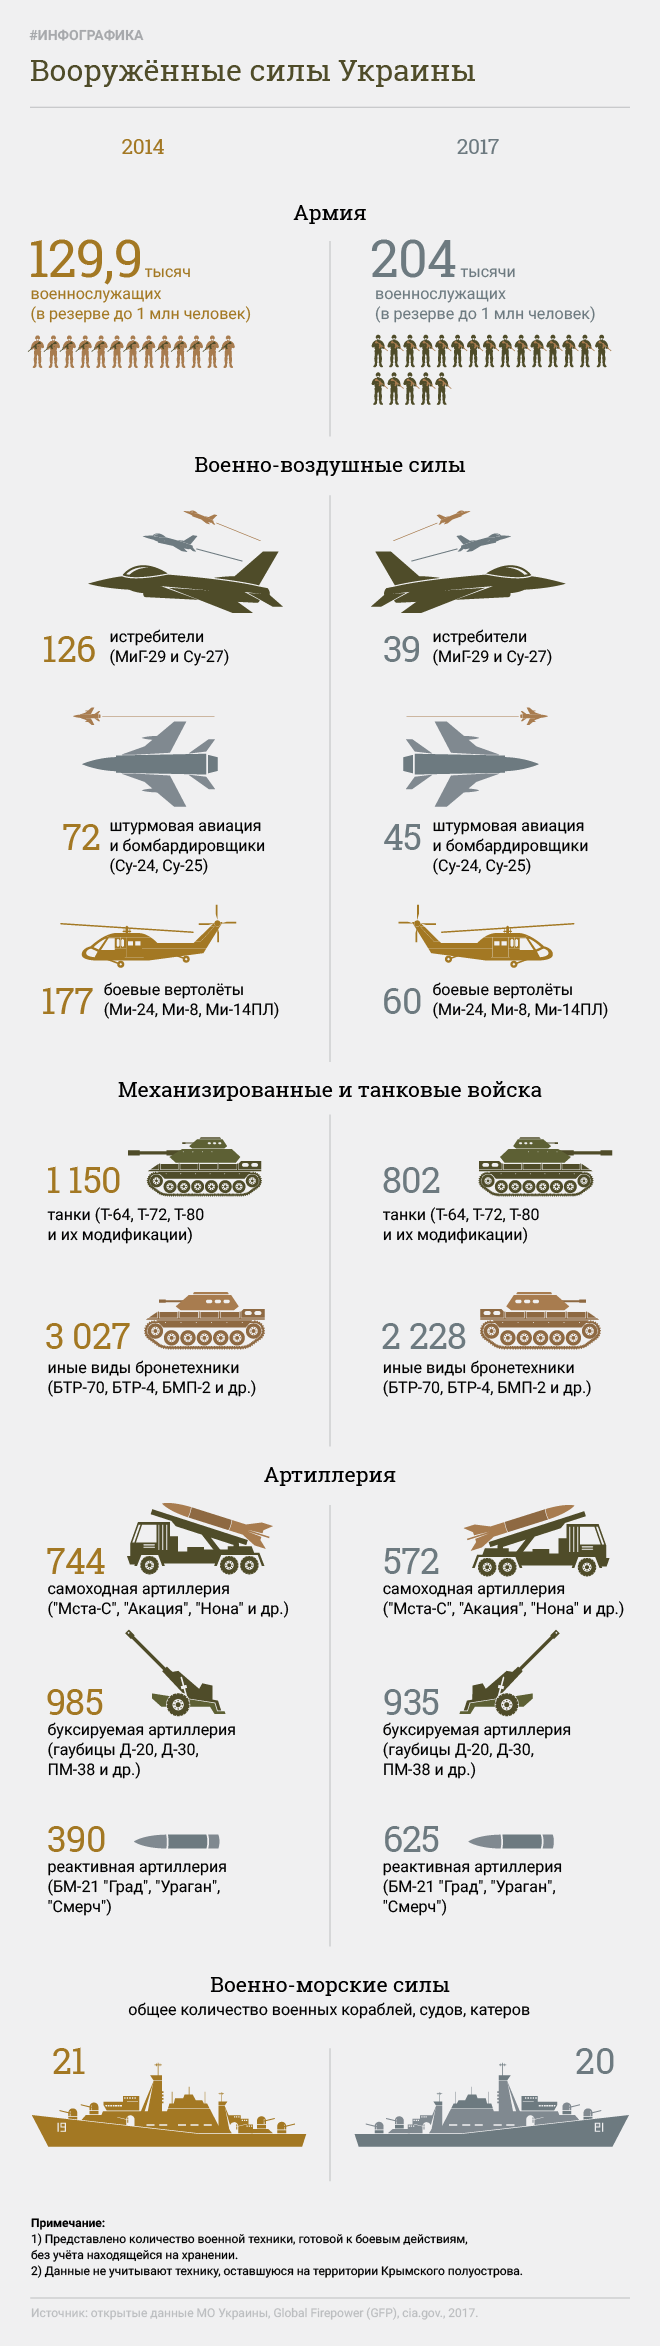 यूक्रेन की सशस्त्र सेना। इन्फ़ोग्राफ़िक्स